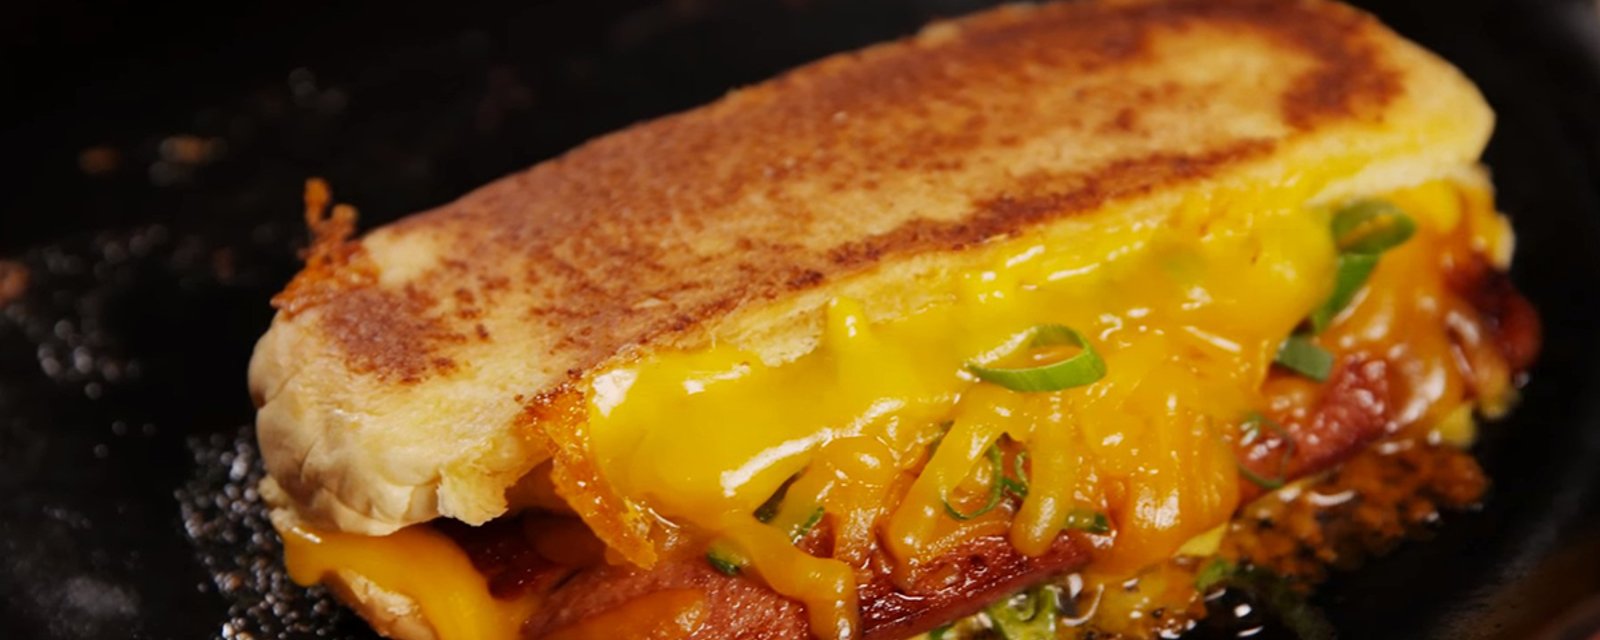 Le meilleur des deux mondes, un hot dog au fromage grillé comme vous ne l'avez jamais vu!